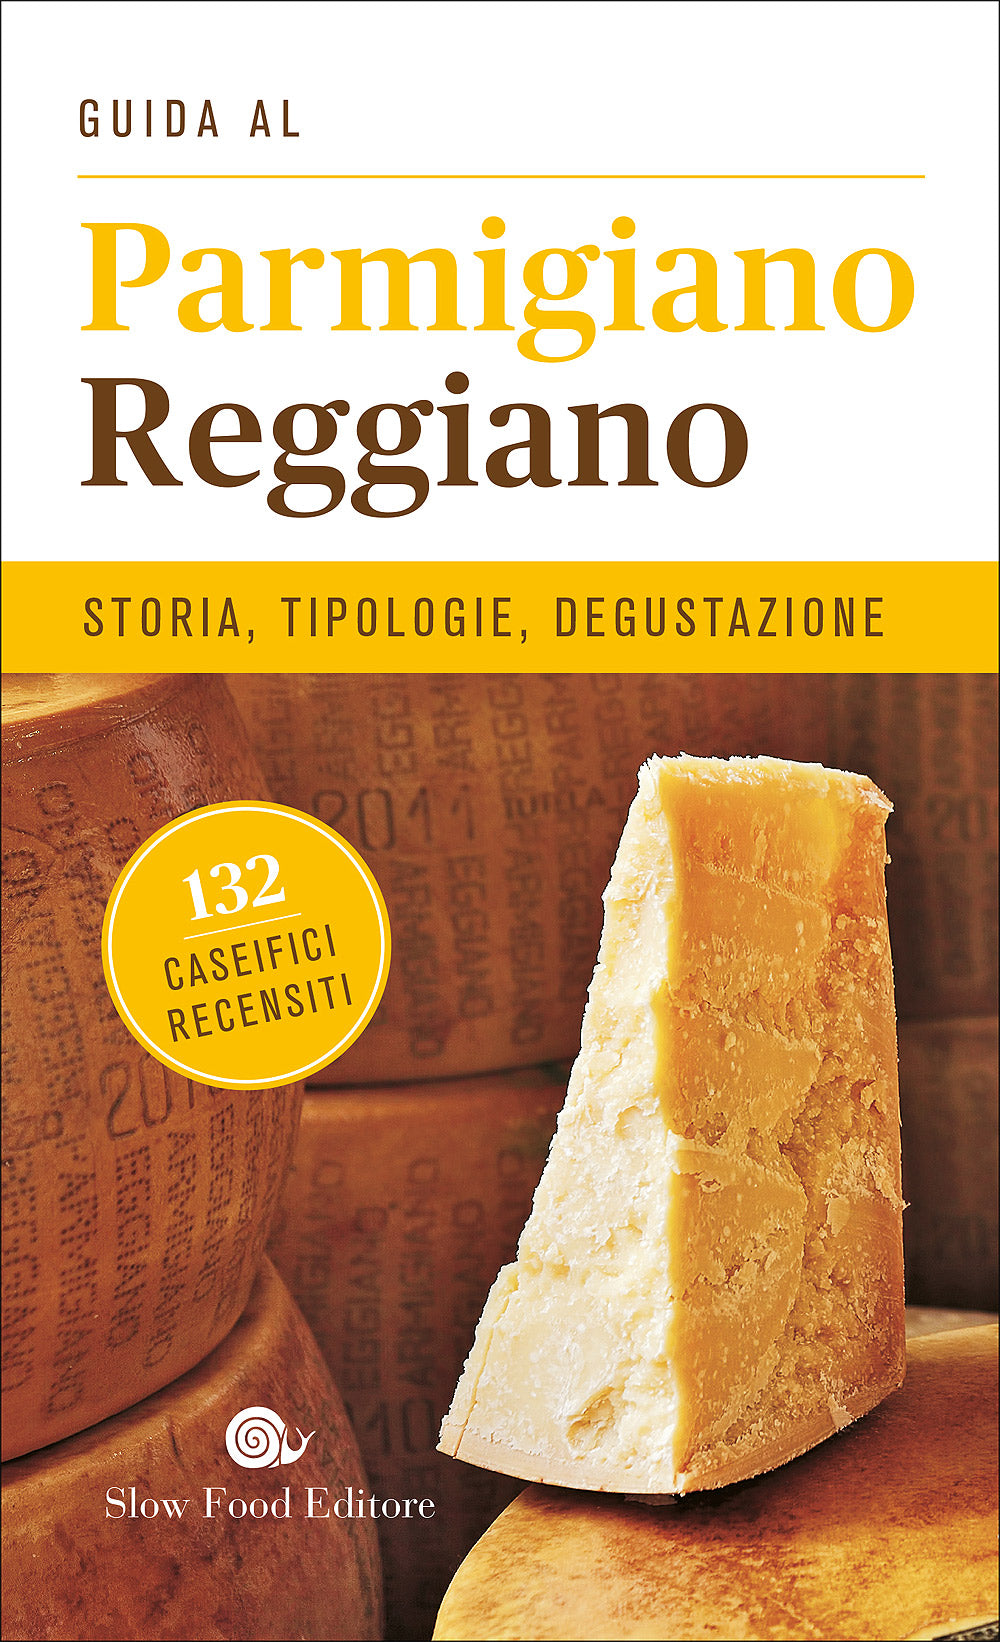 Guida al Parmigiano Reggiano. Storia, tipologie, degustazione - 132 caseifici recensiti